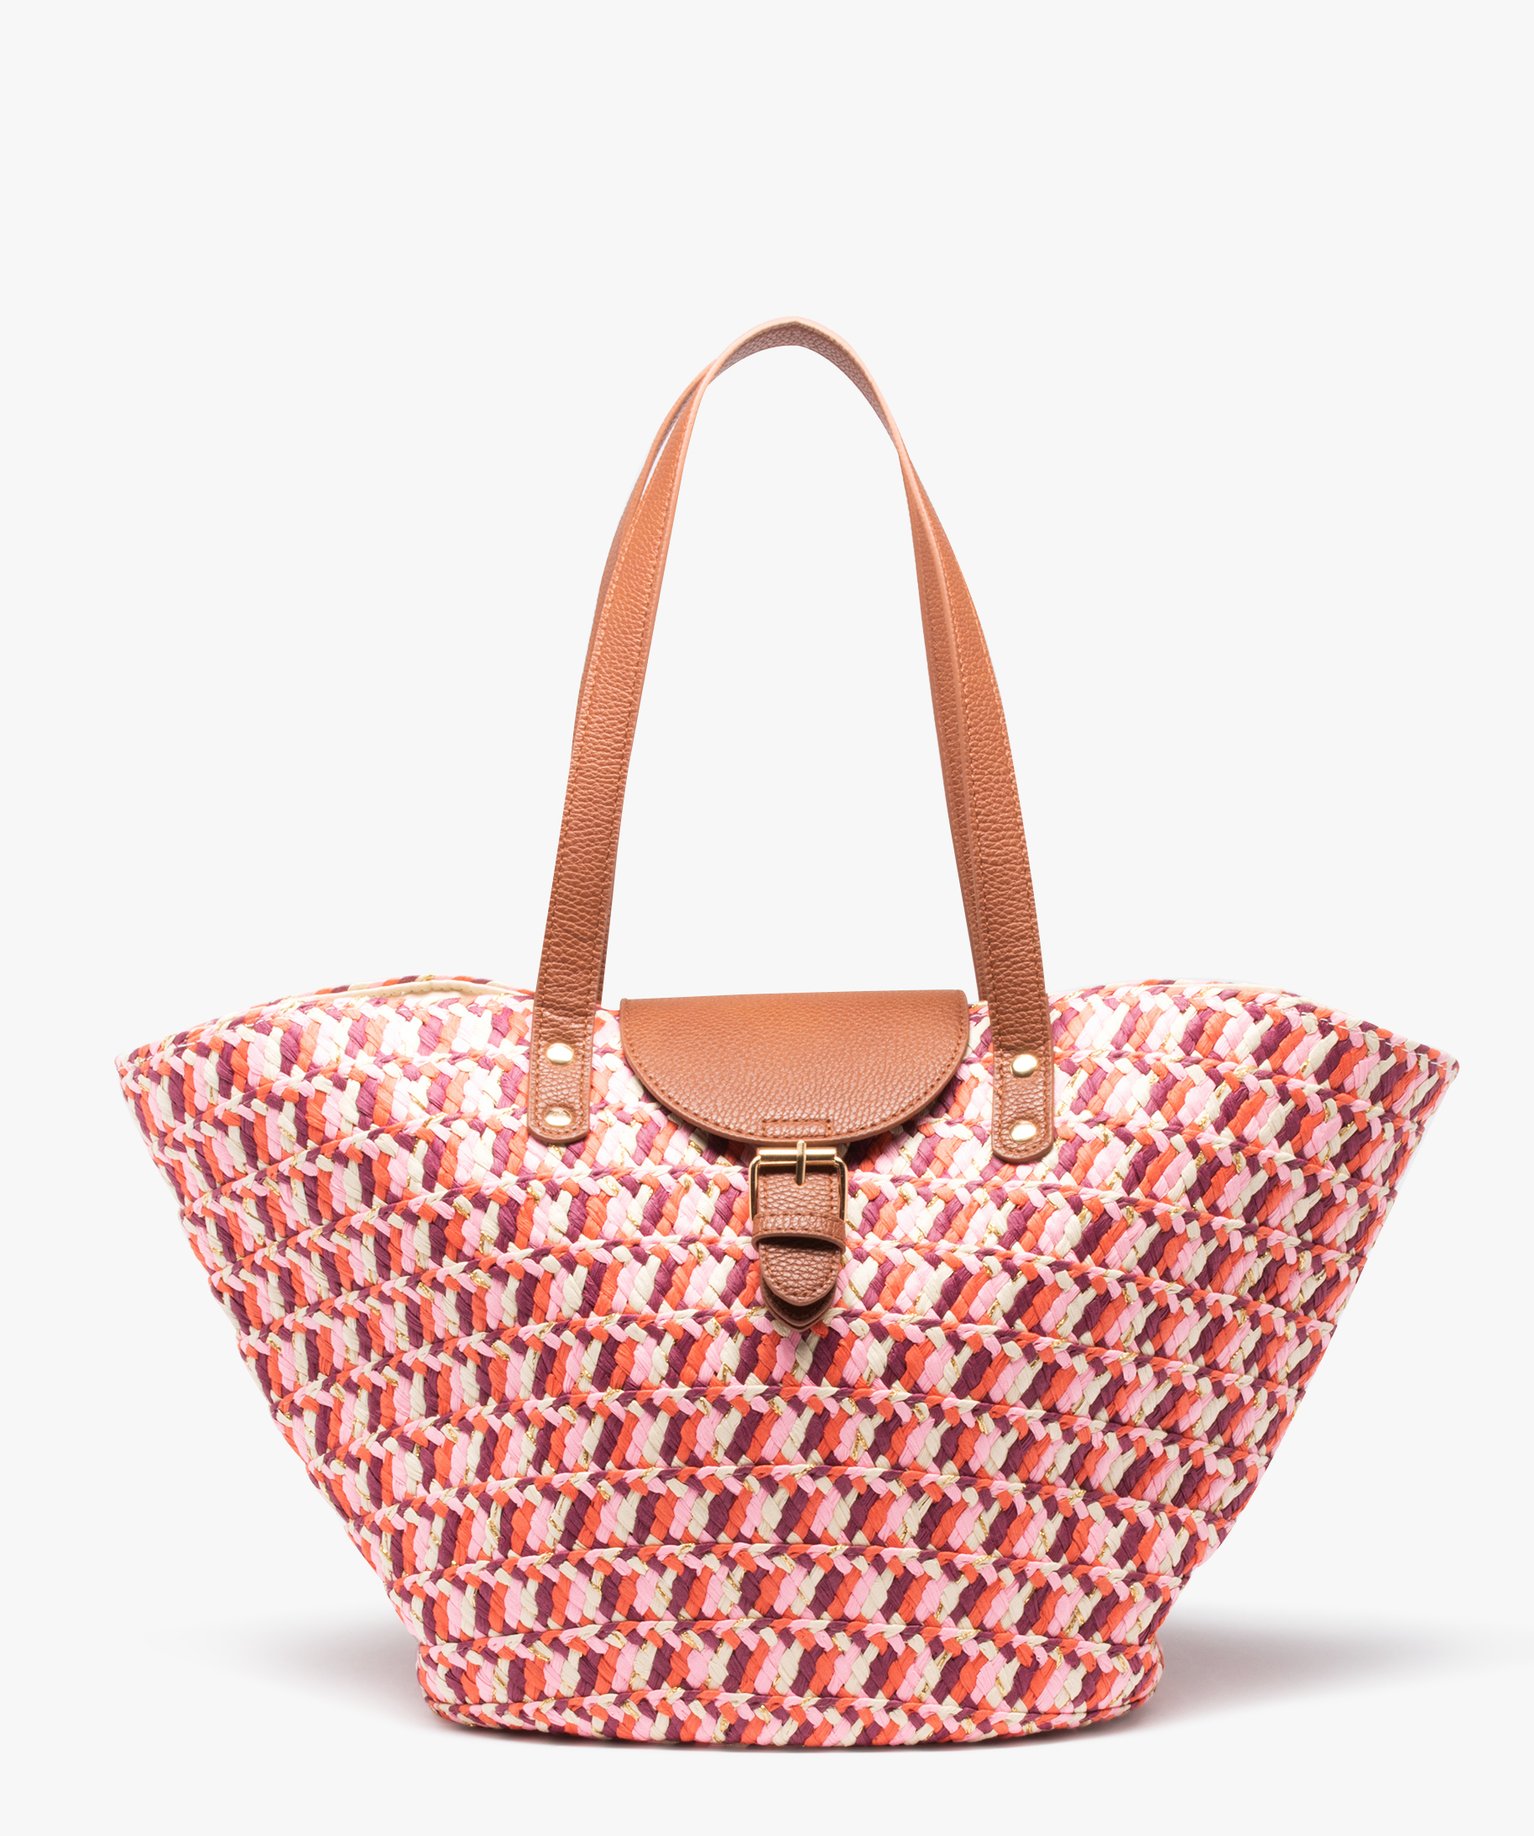 sac cabas femme en paille multicolore et pailletee rose cabas - grand volume